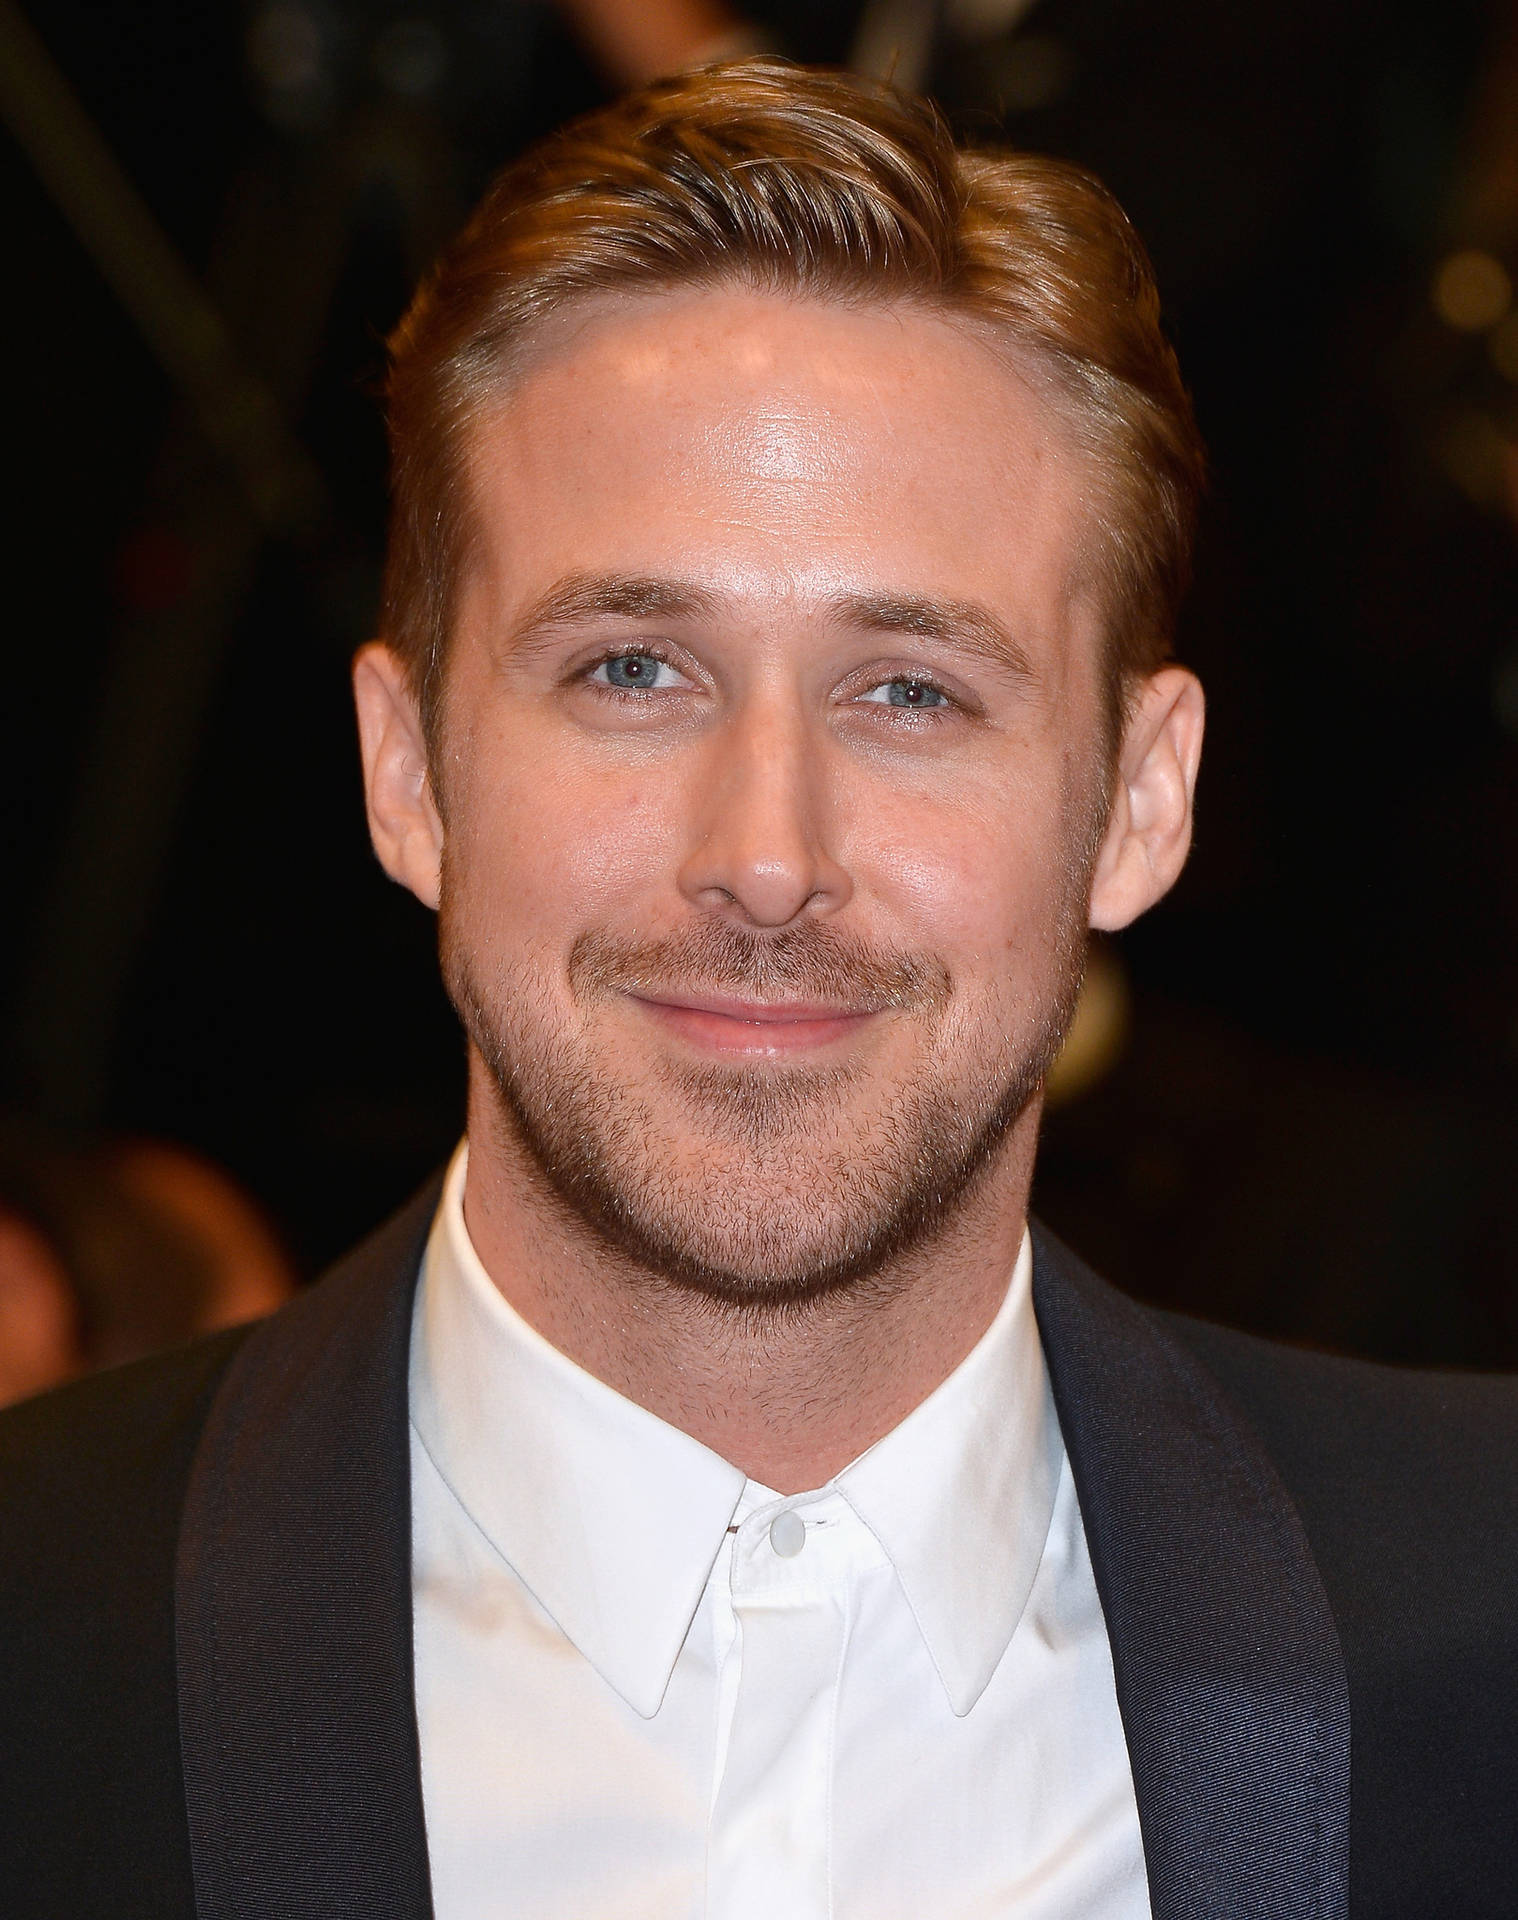 Smiling Ryan Gosling Wallpaper